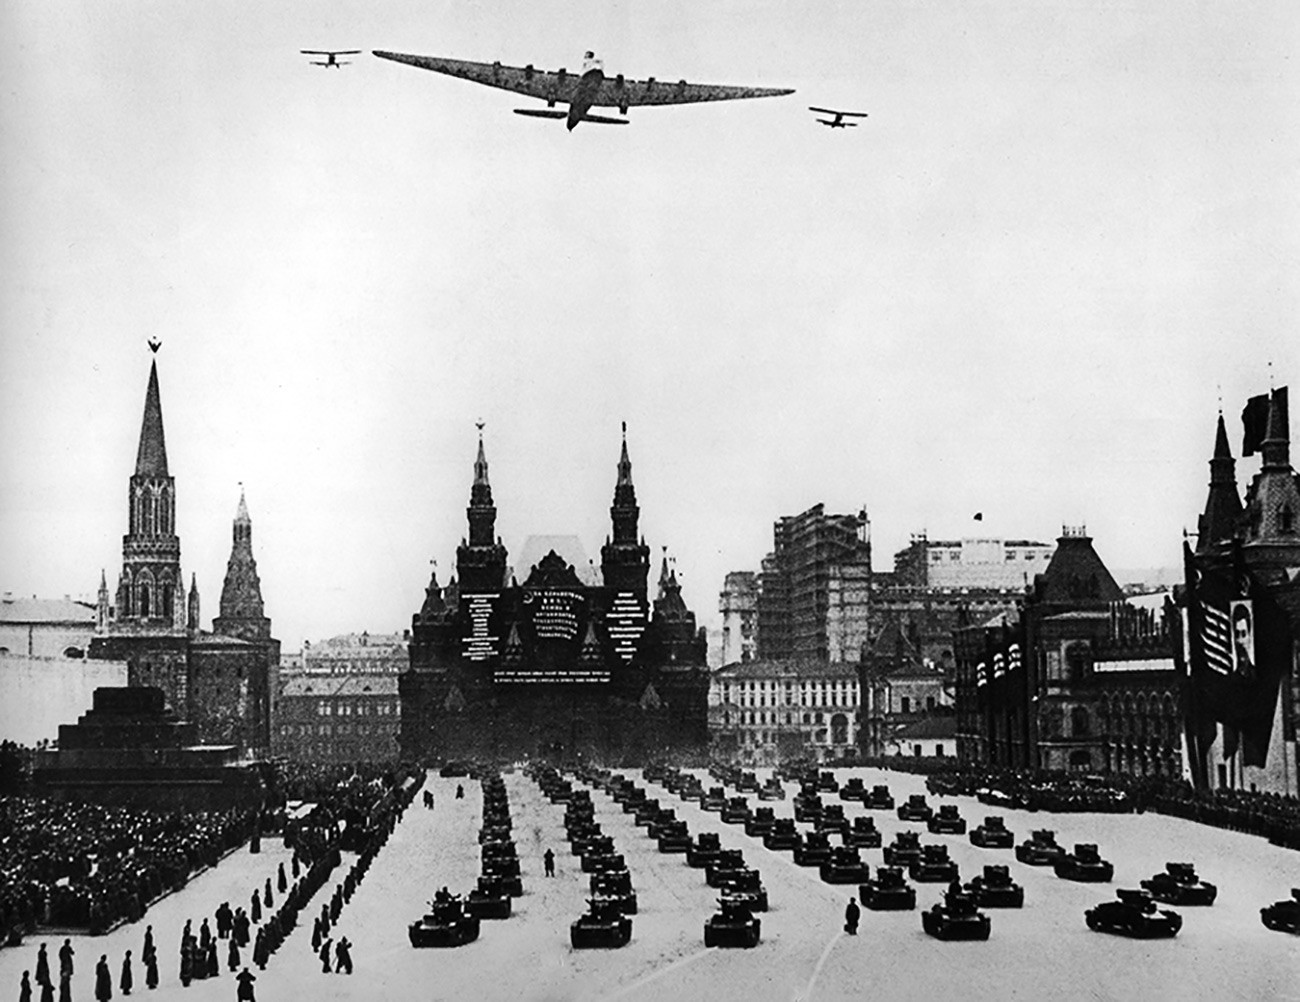 ANT-20 sobrevoa a Praça Vermelha em Moscou